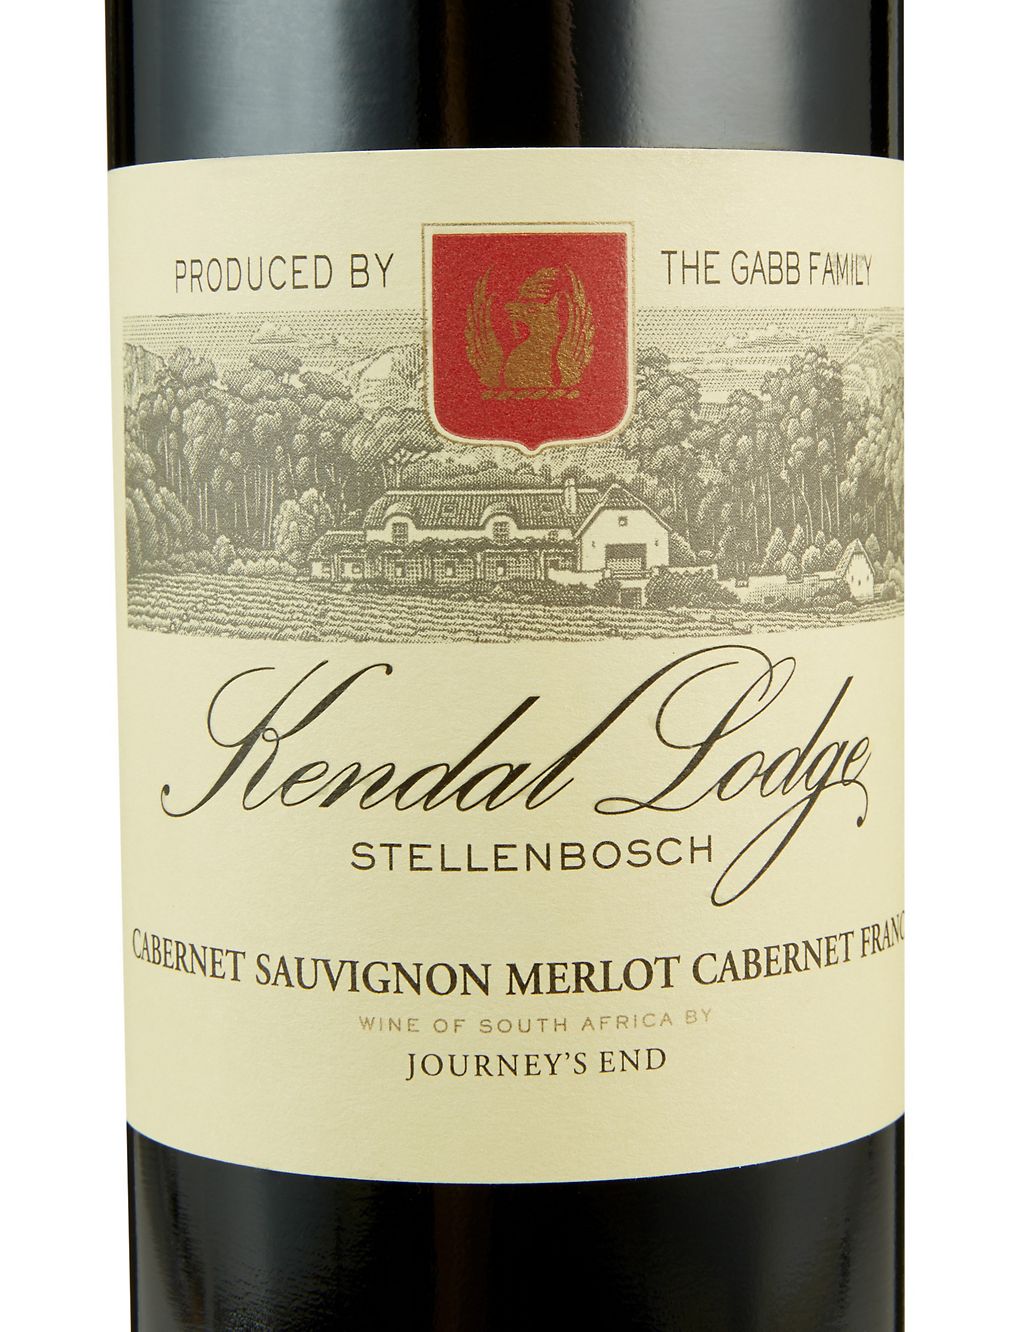 Journey's End Kendal Lodge Merlot Cabernet Sauvignon - Case of 6 1 of 3